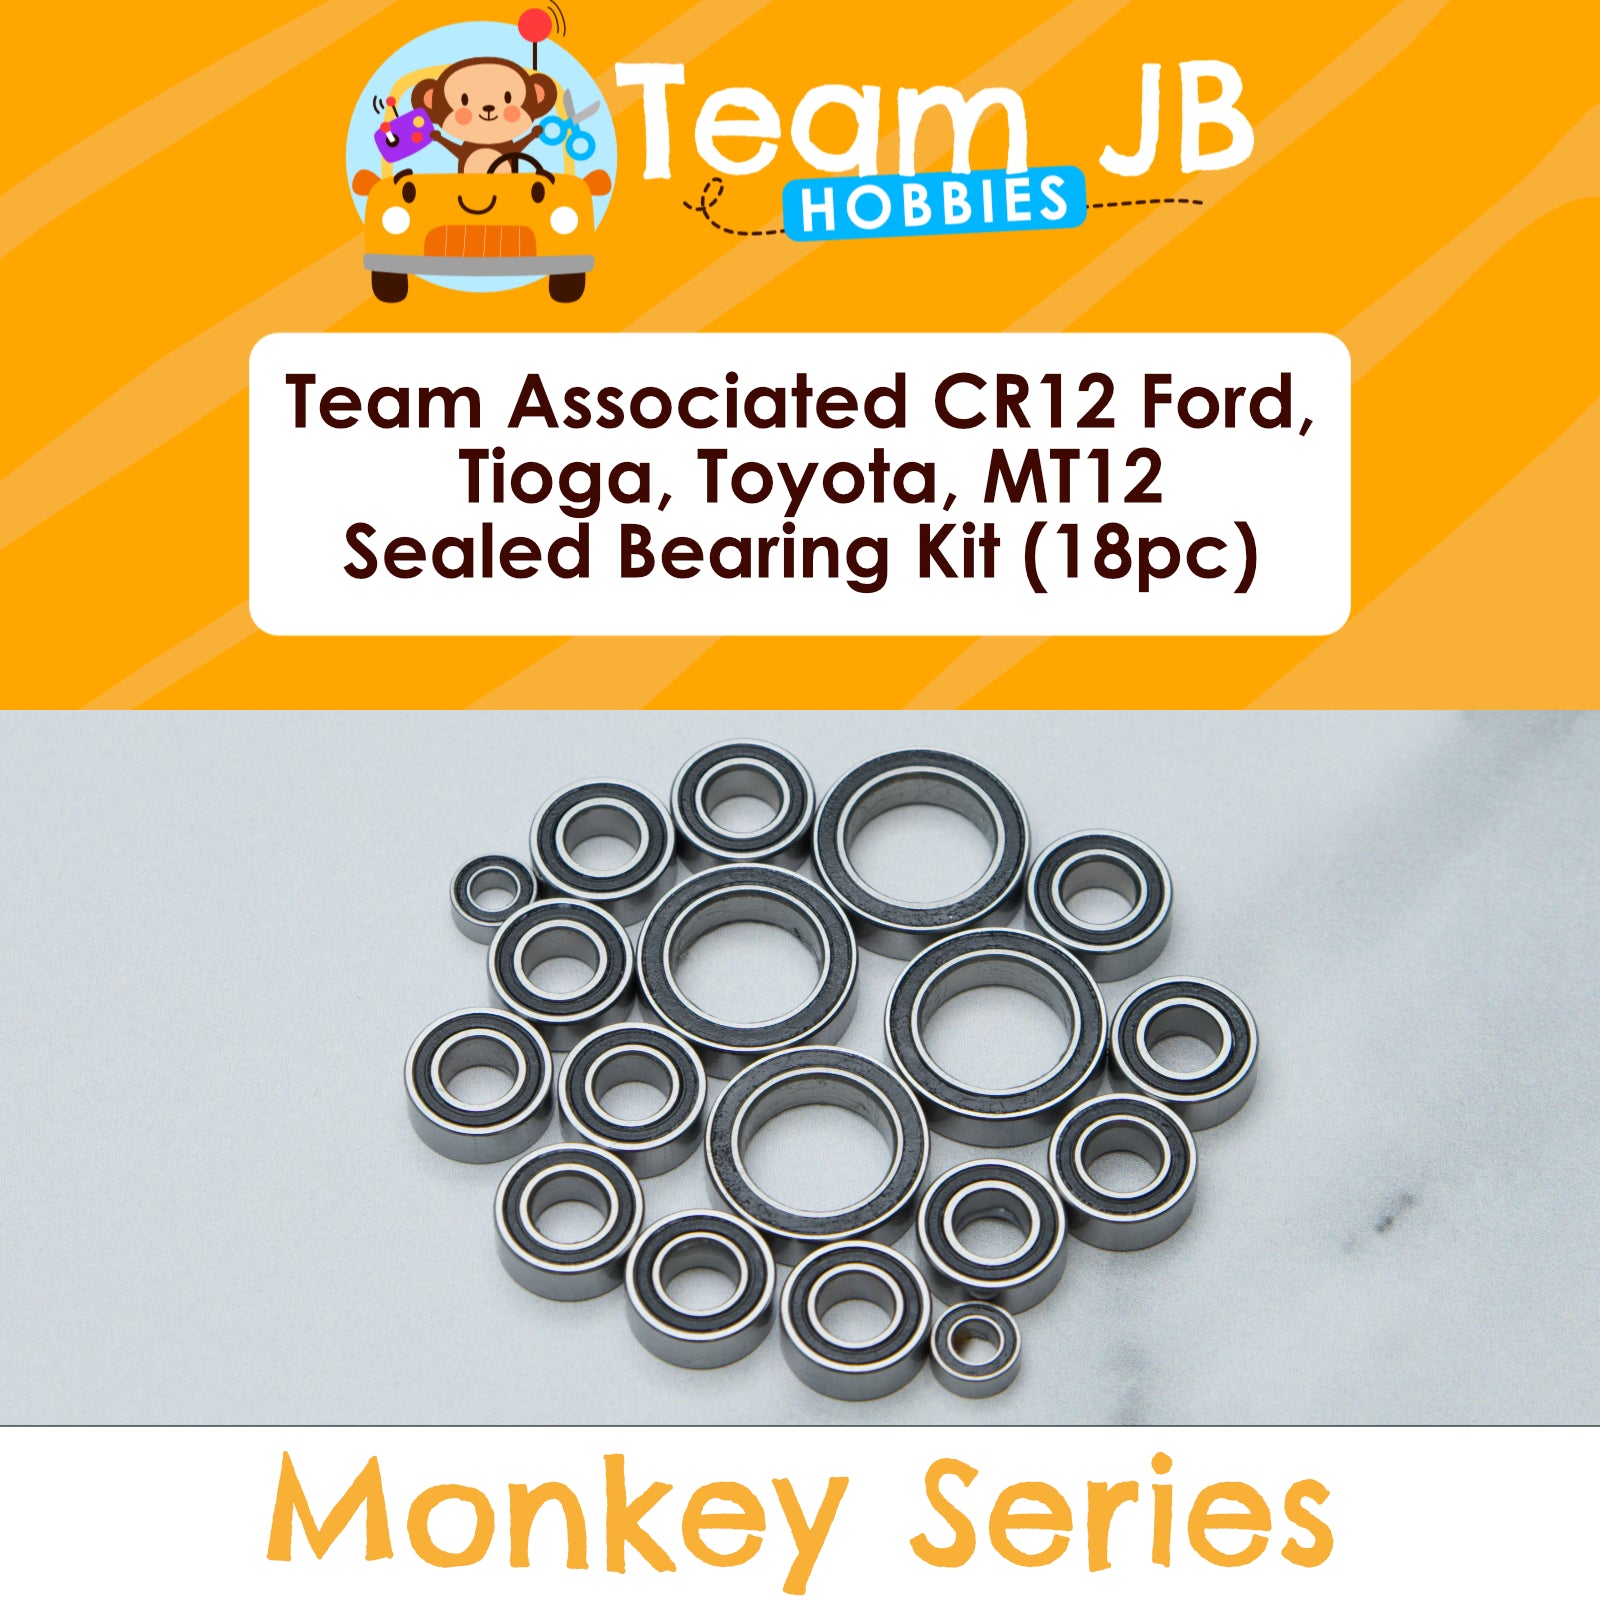 Team Associated CR12 Ford, Tioga, Toyota FJ45, MT12 Monster Series RTR - Sealed Bearing Kit